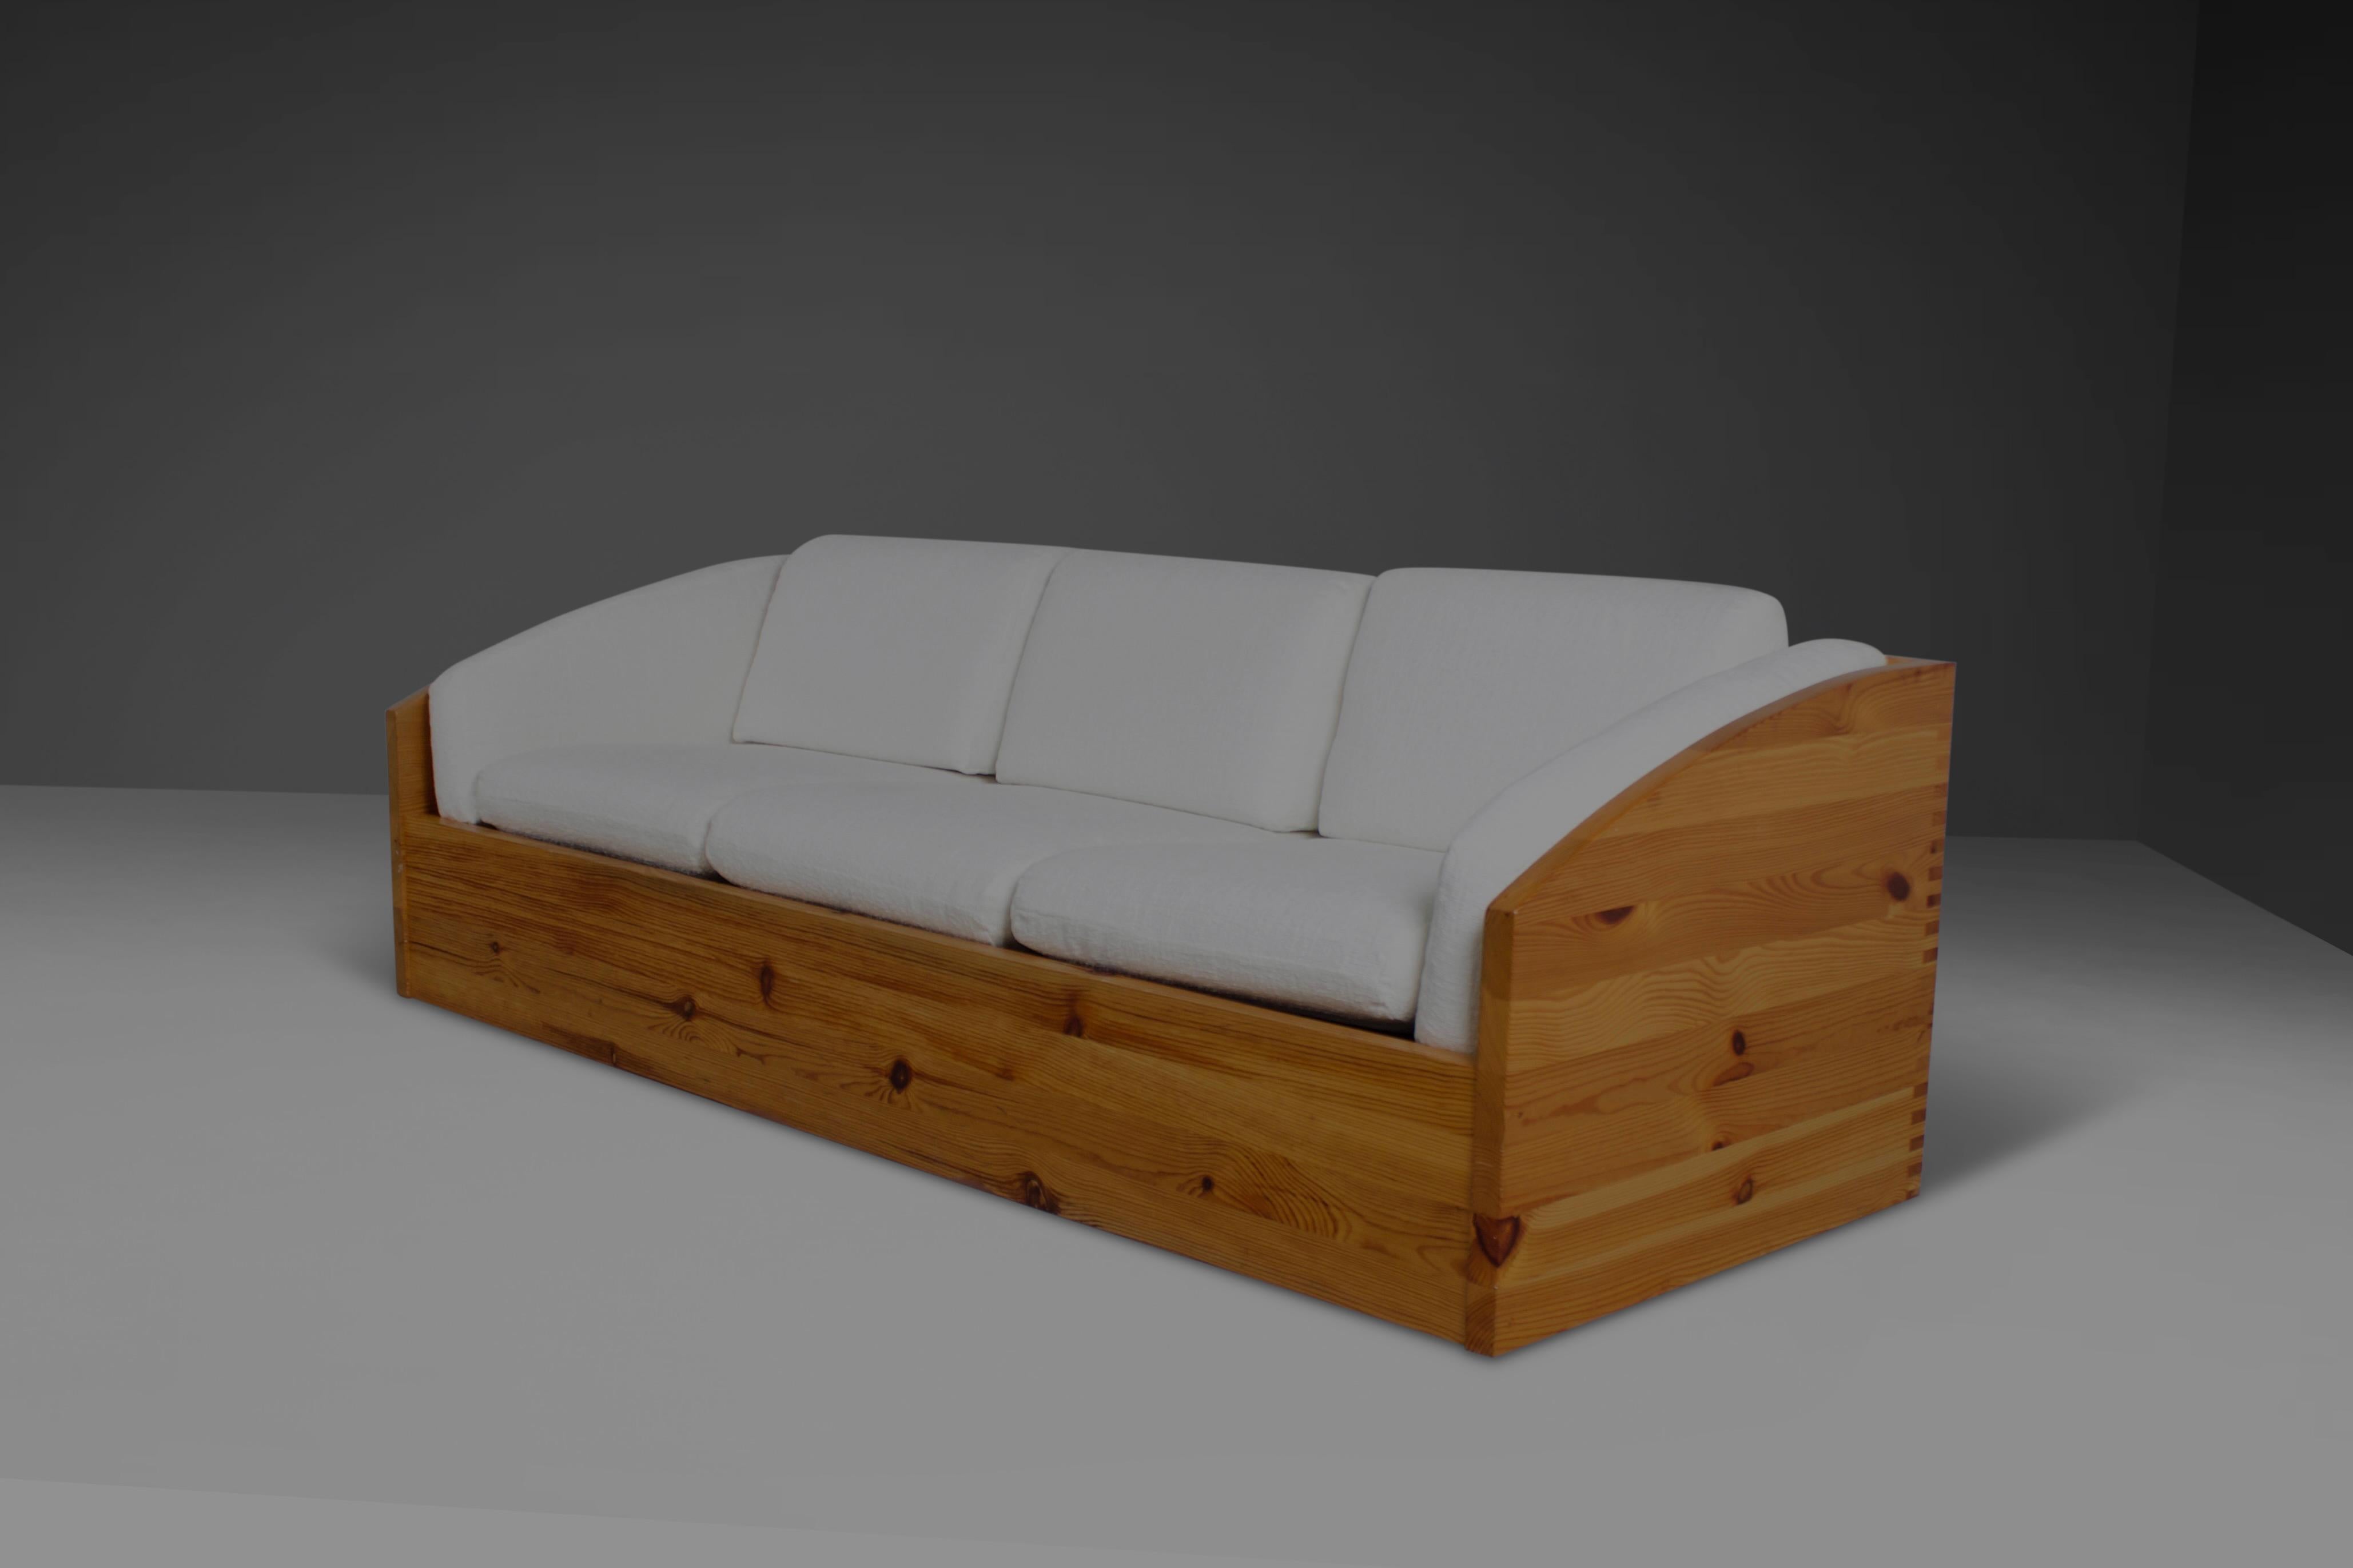 3-sitziges Sofa von Ate Van Apeldoorn in gutem Zustand. 

Das Sofa wurde in den 1970er Jahren in Holland von Houtwerk Hattem hergestellt. 

Es ist aus massivem Kiefernholz gefertigt, das durch Markenverbindungen verbunden ist. 

Die Kissen sind mit